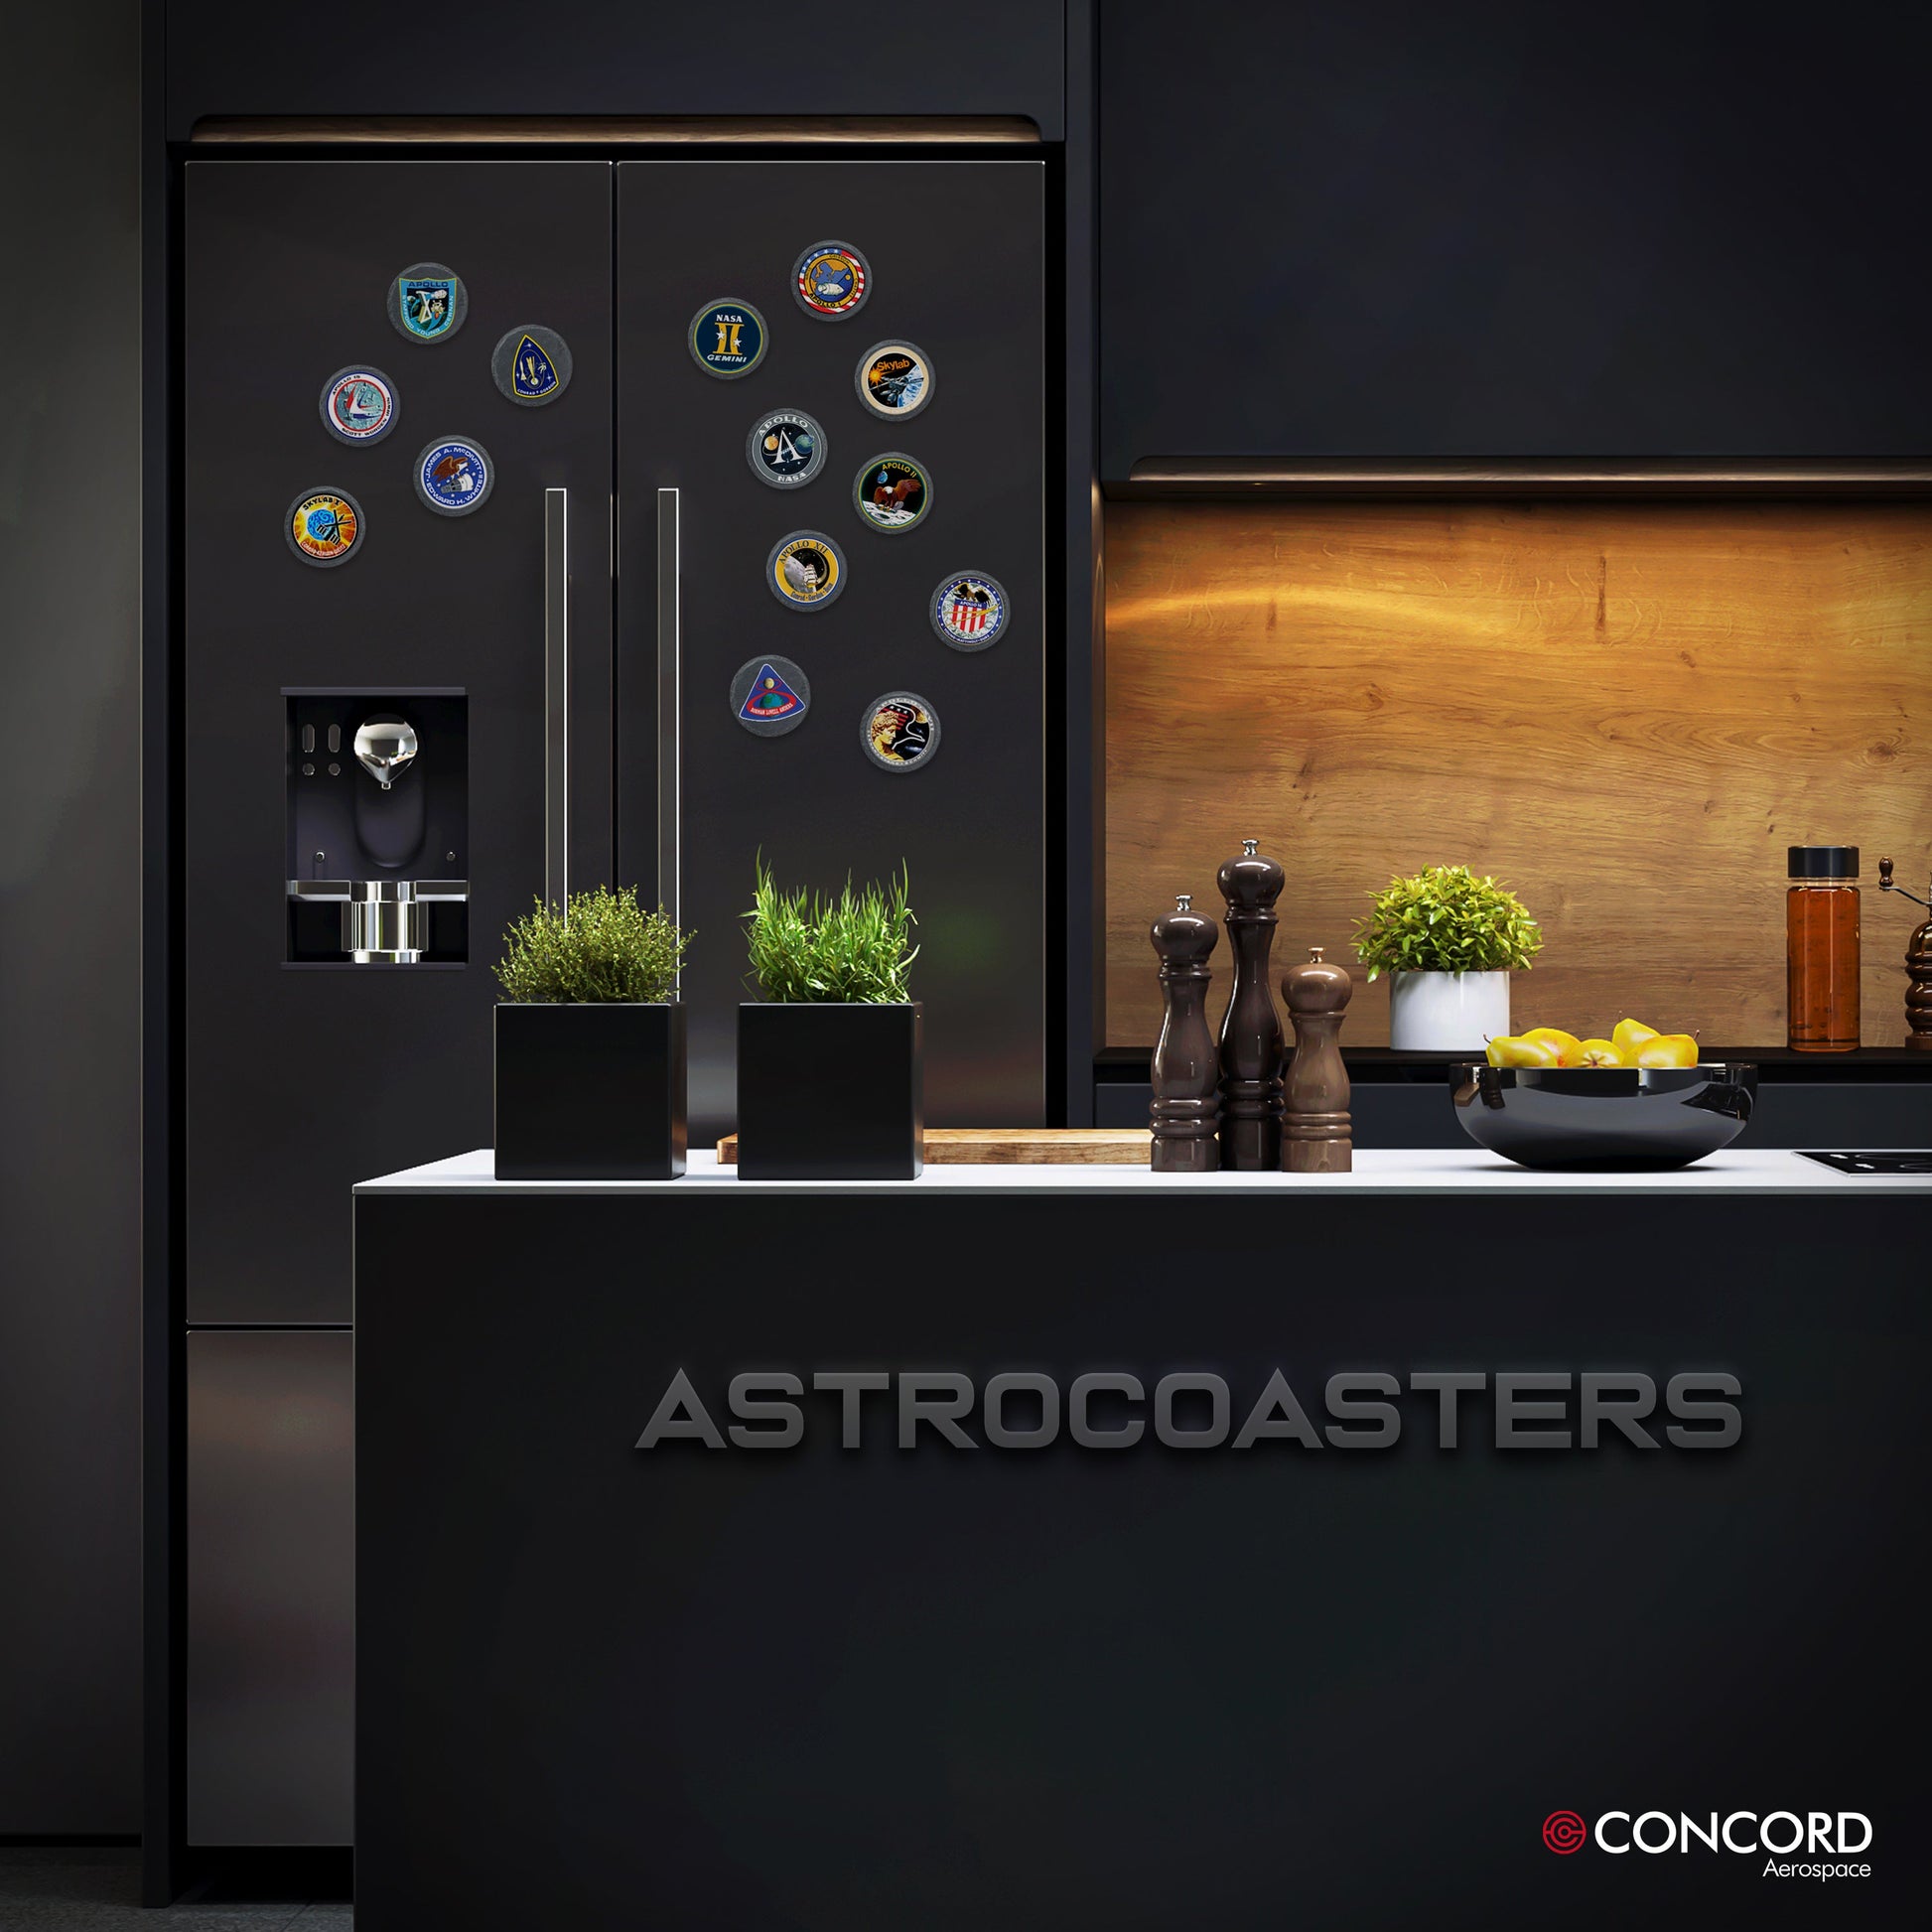 ASTRO COOKIE!!! - Concord Aerospace Concord Aerospace Concord Aerospace Coasters